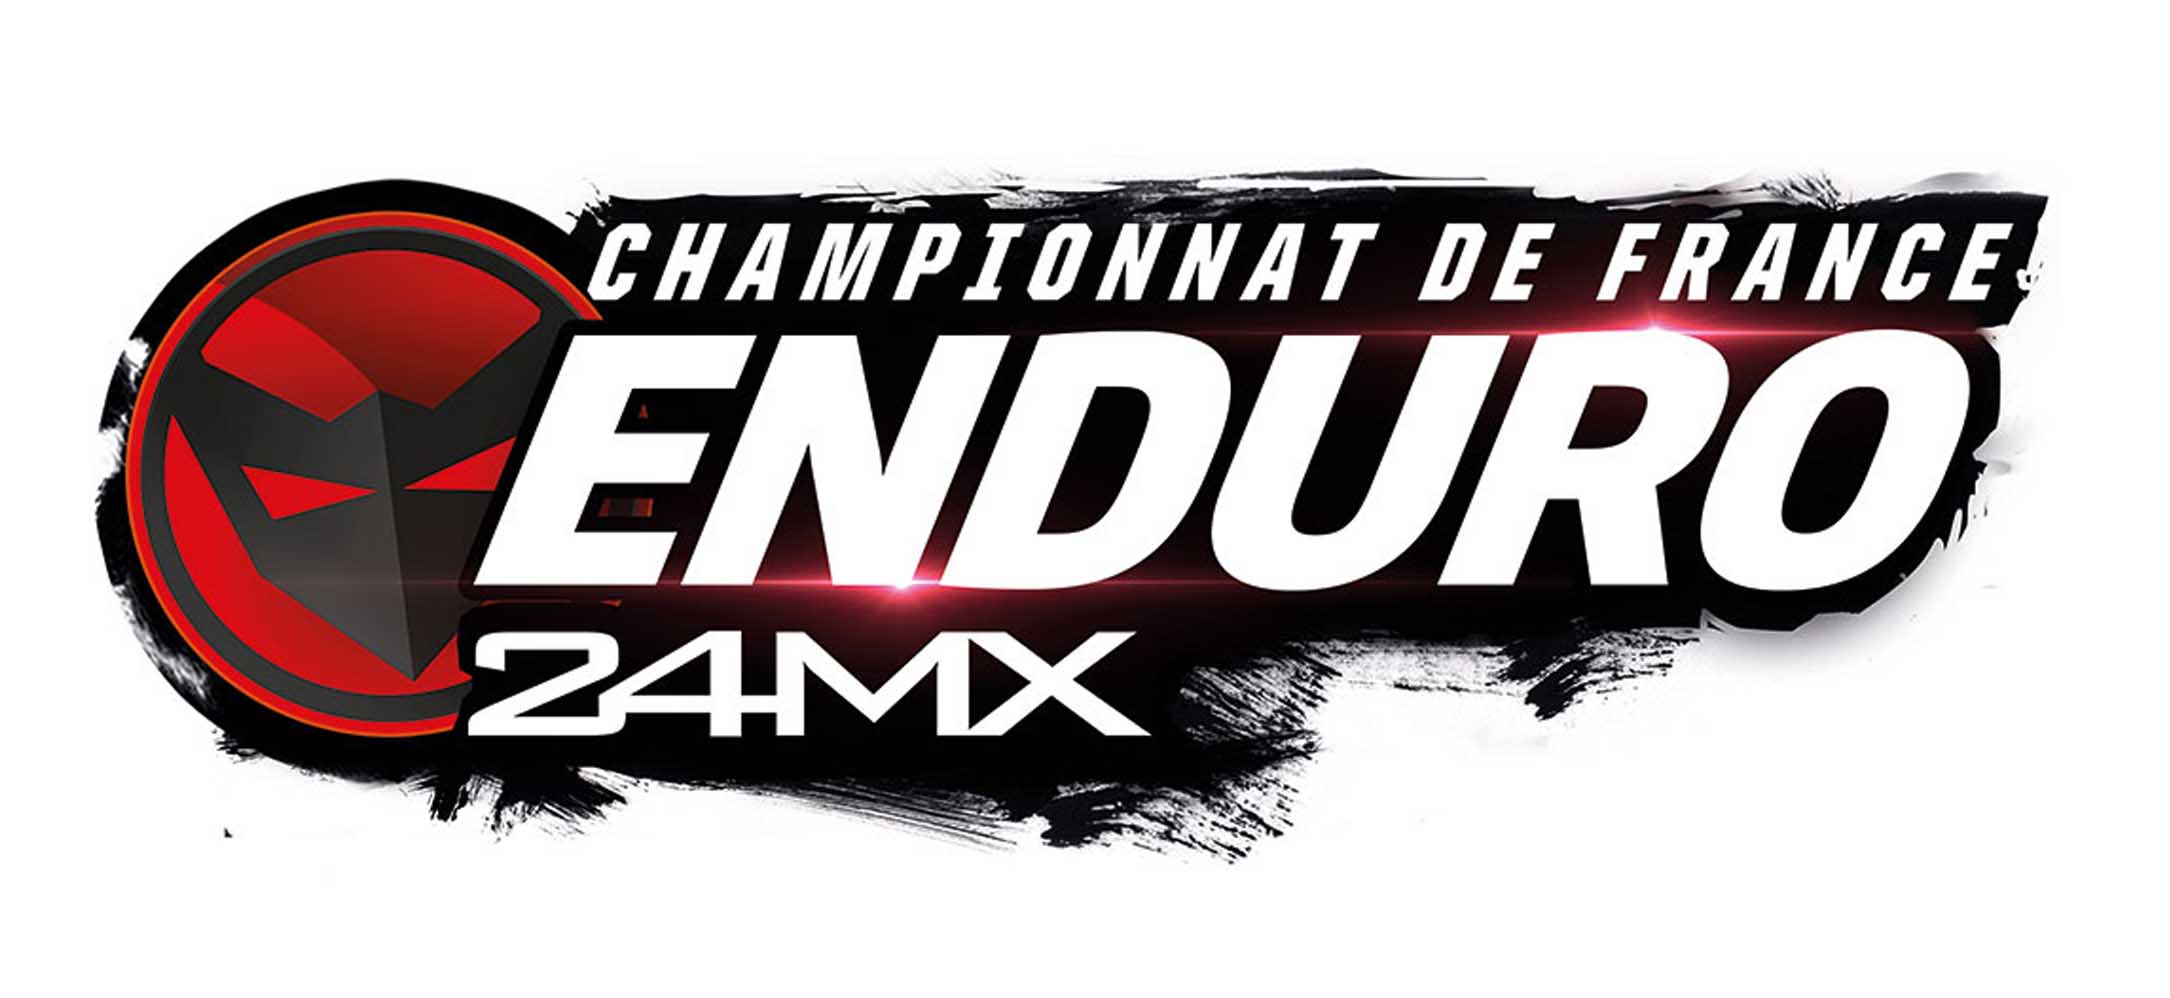 Montoncel Racing Competition, Championnat de France Enduro 24MX